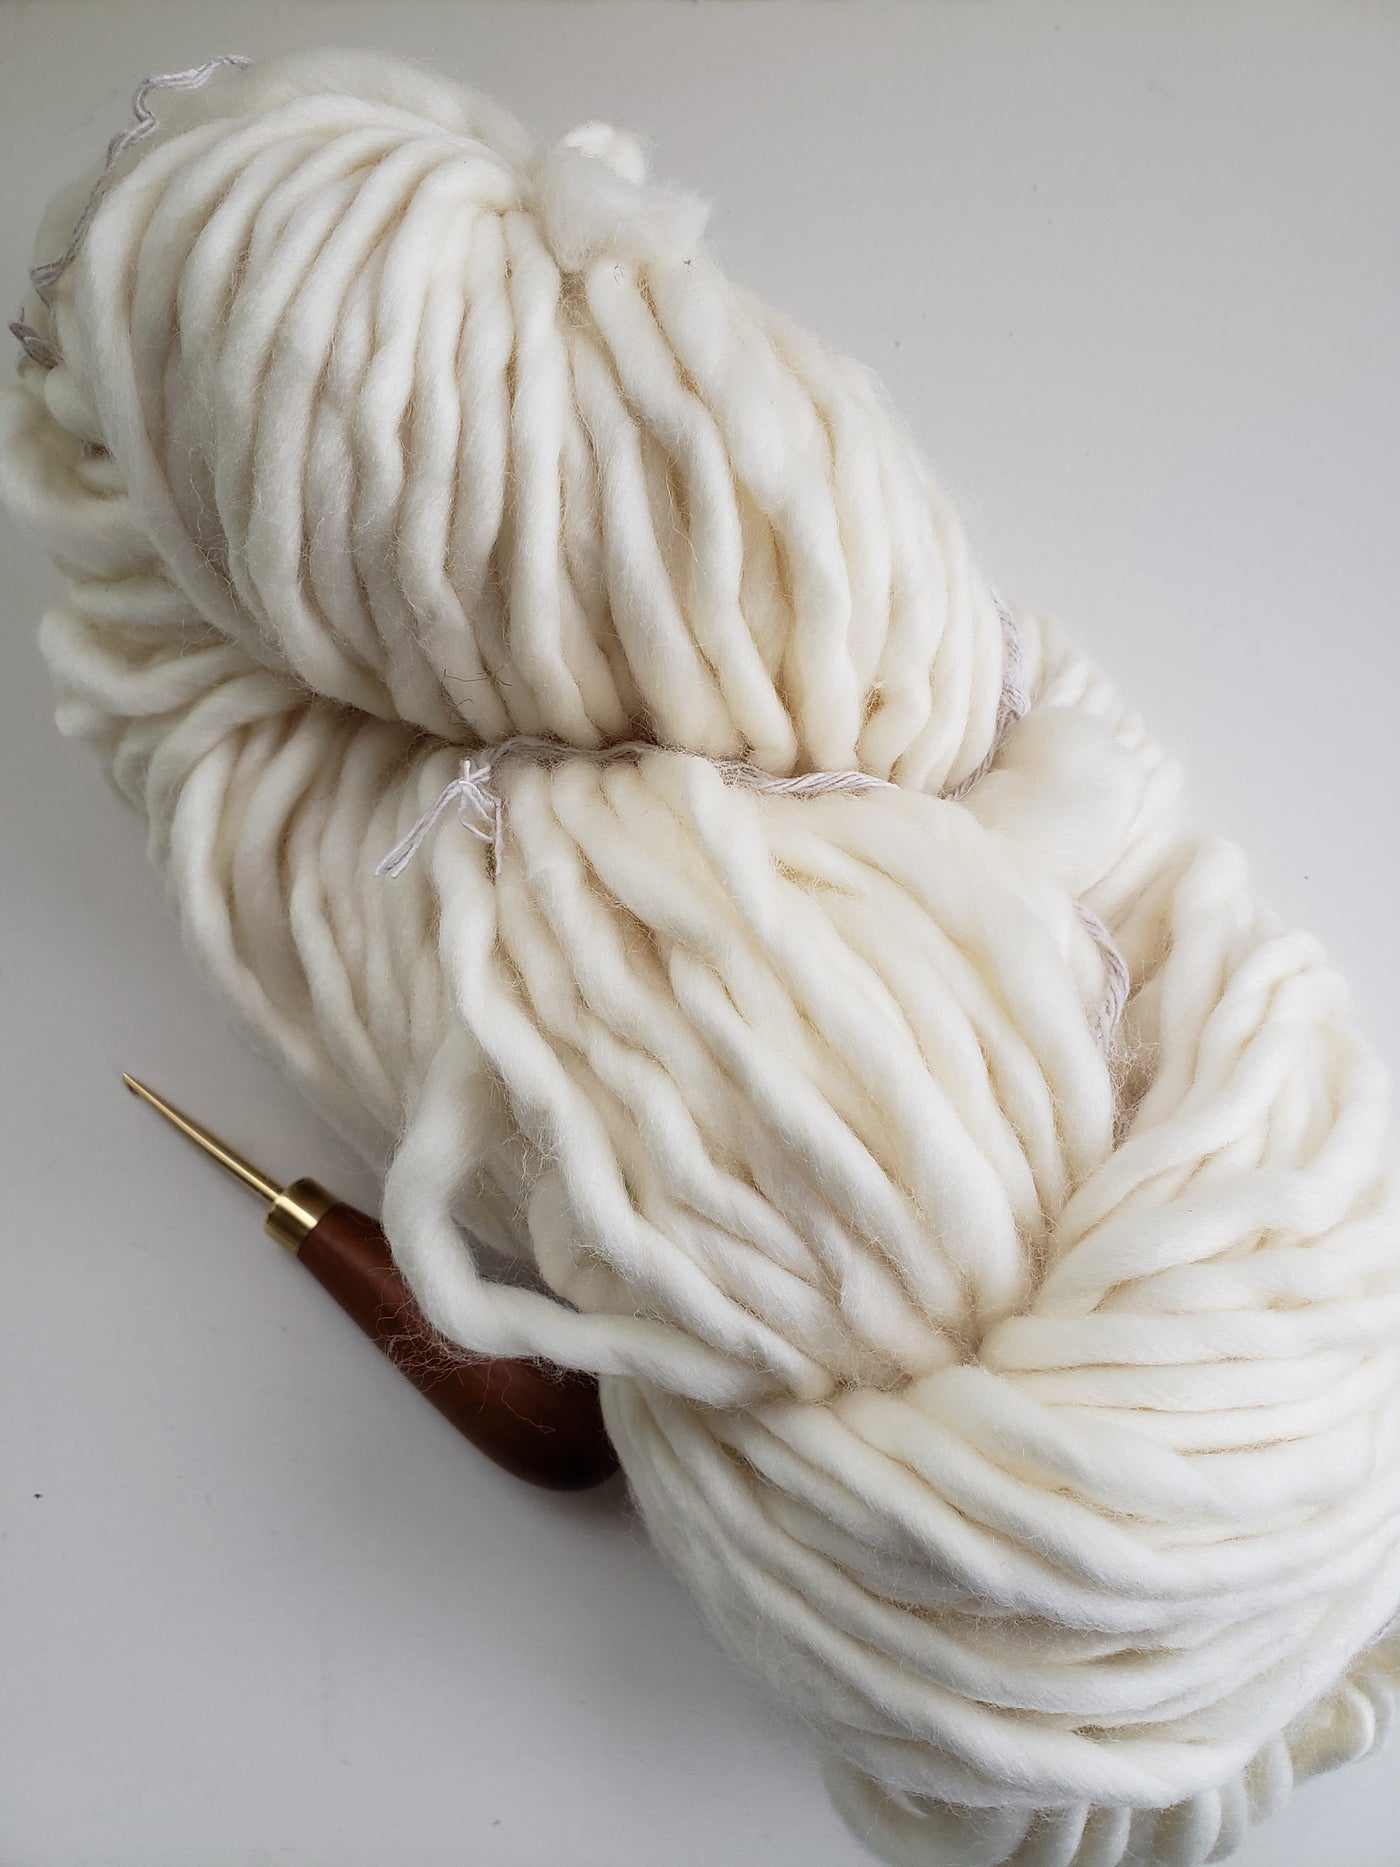 Giant Merino Wool Yarn Natural white